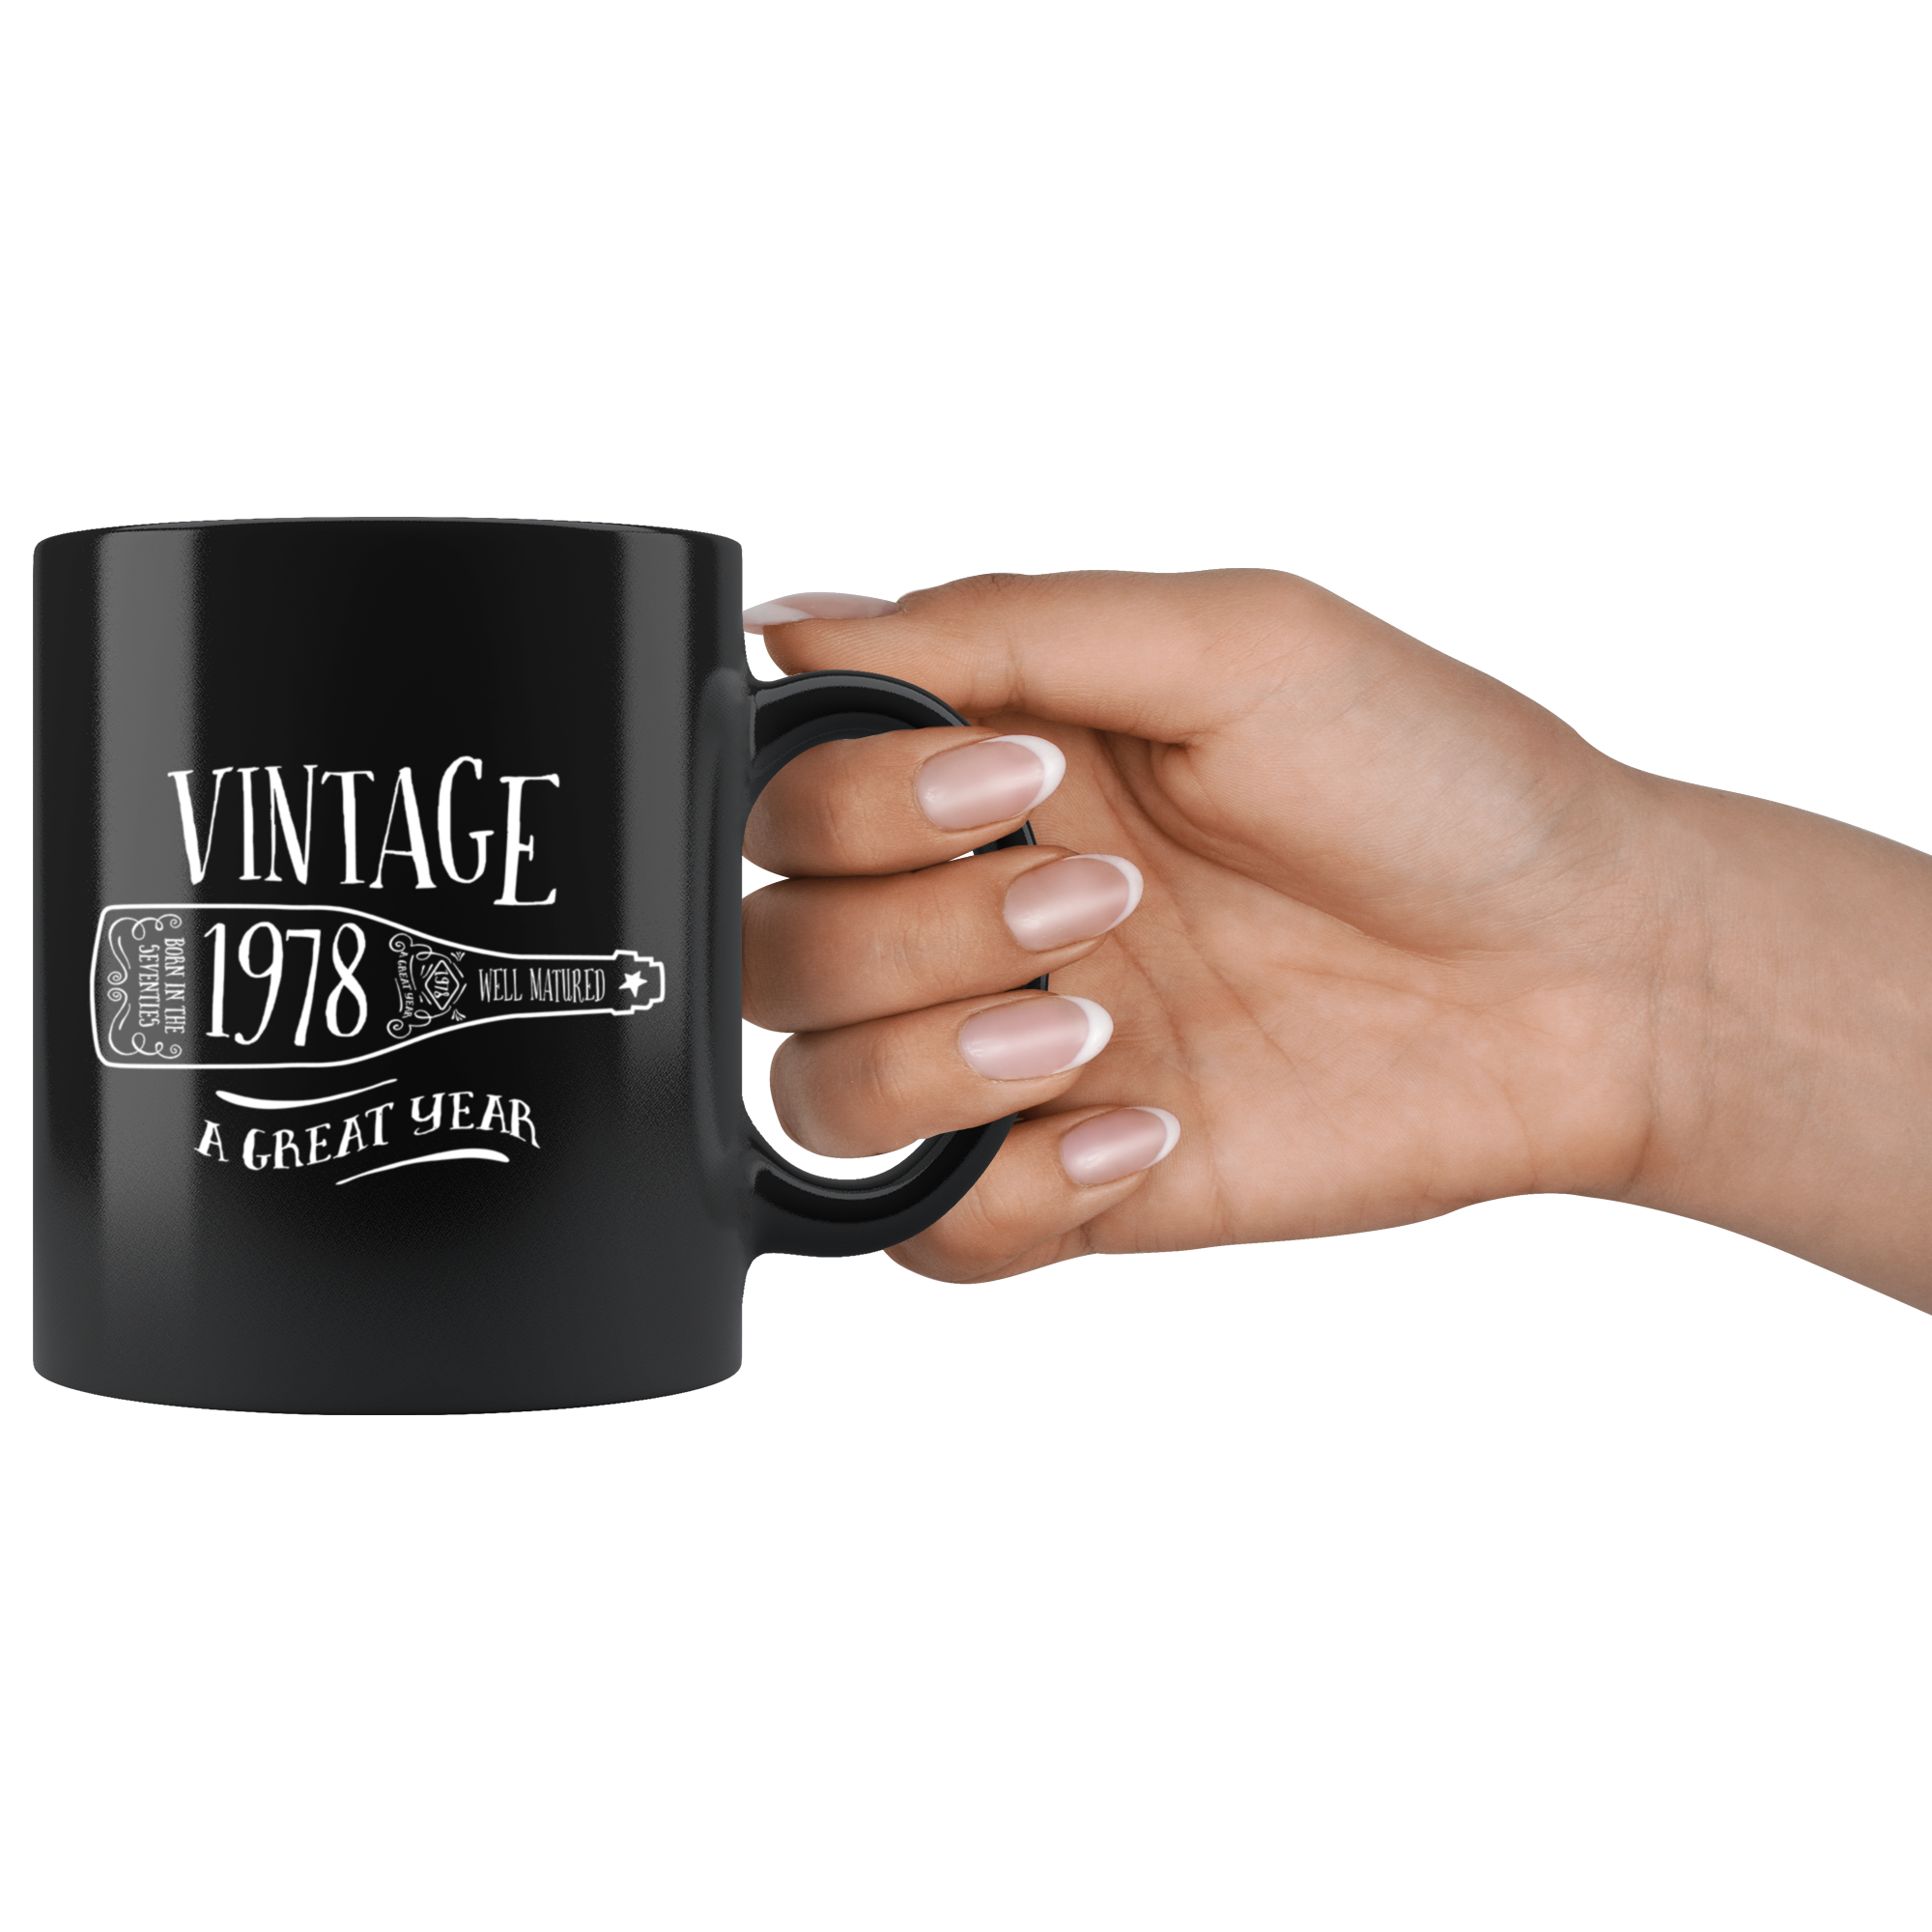 Vintage 1978 - Black Mug